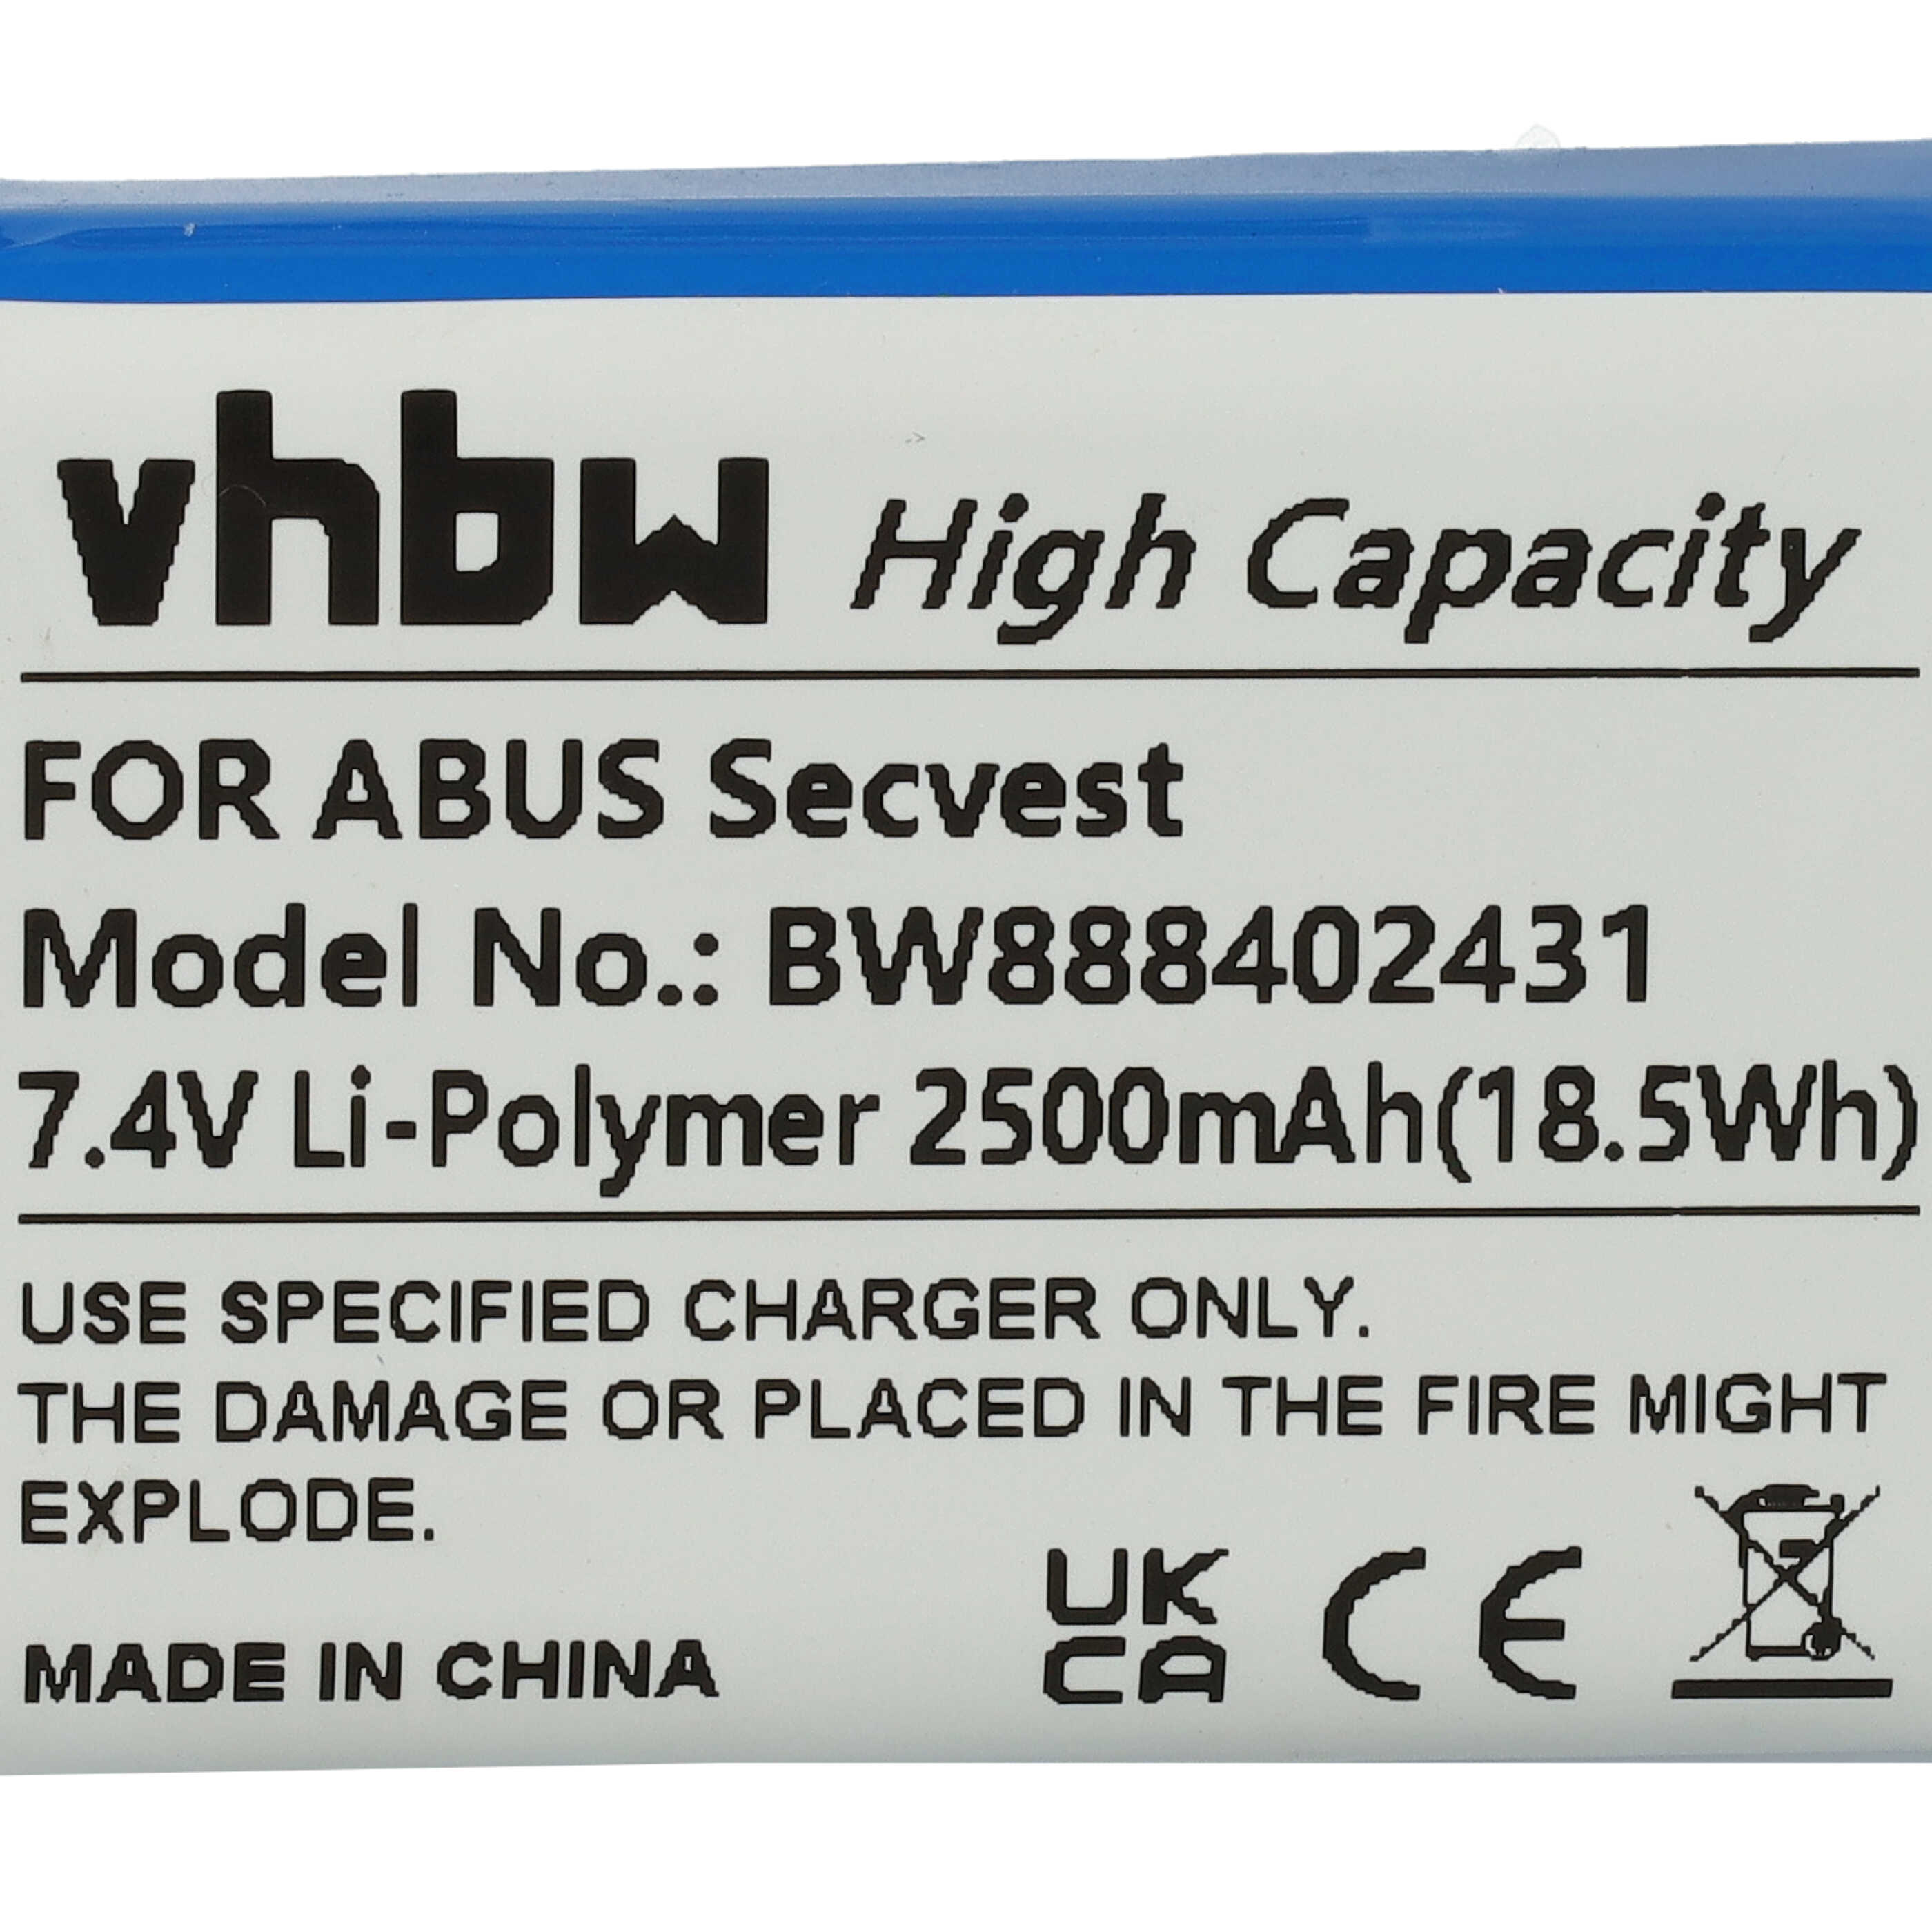 Batería reemplaza ABUS FUBT50000 para instalación alarma ABUS - 2500 mAh 7,4 V Li-poli